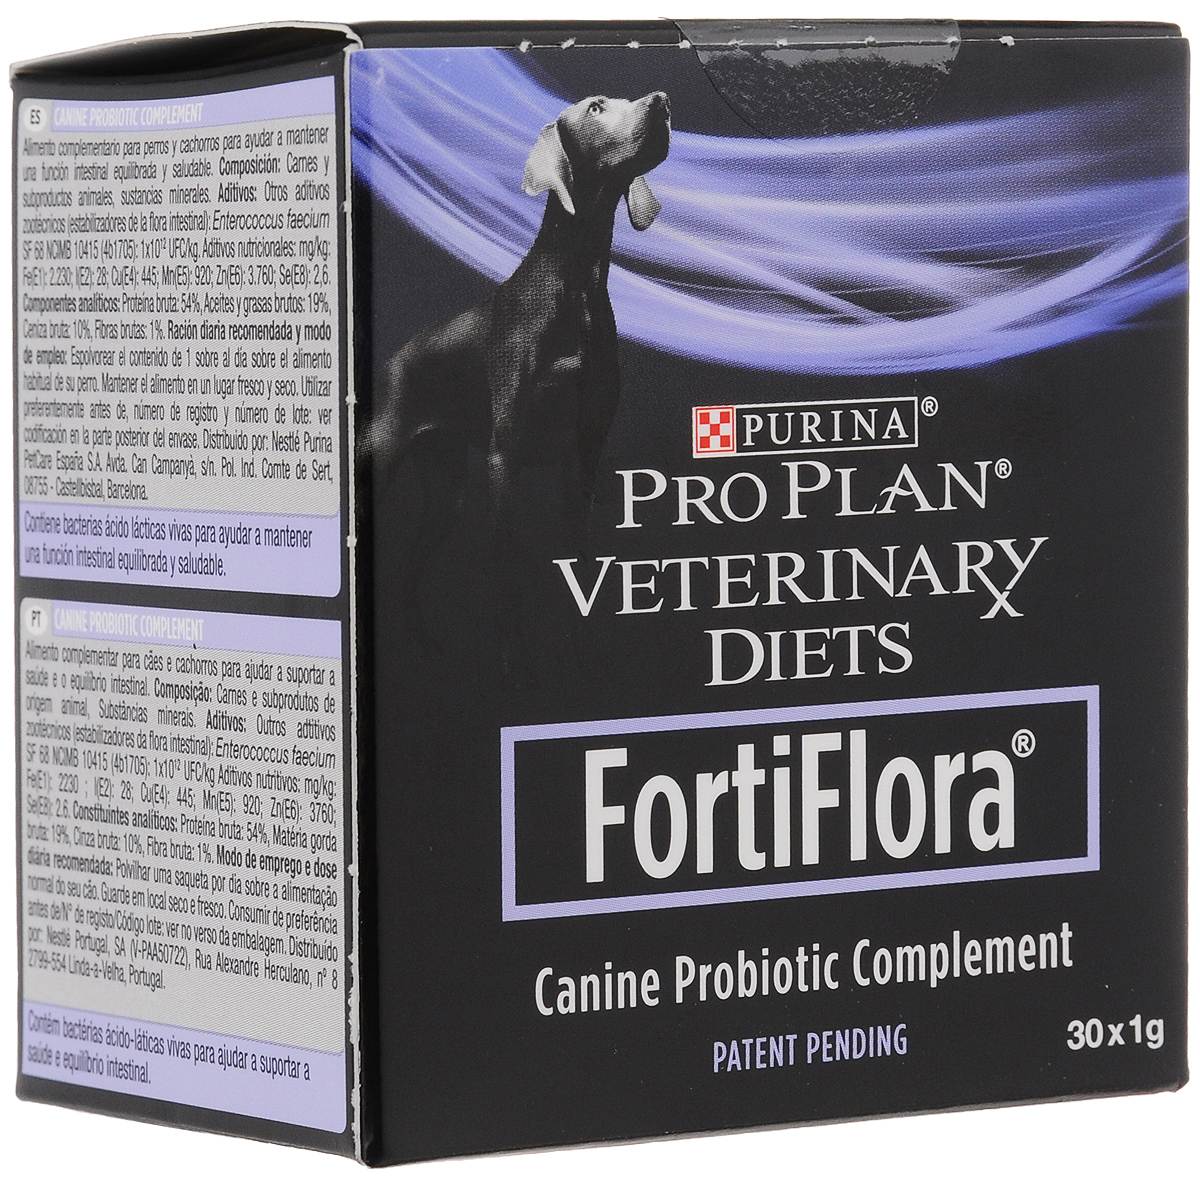 Фортифлора для собак: инструкция по применению purina pro plan veterinary diets fortiflora с дозировкой и аналогами. как давать пробиотик щенкам и где его хранить?